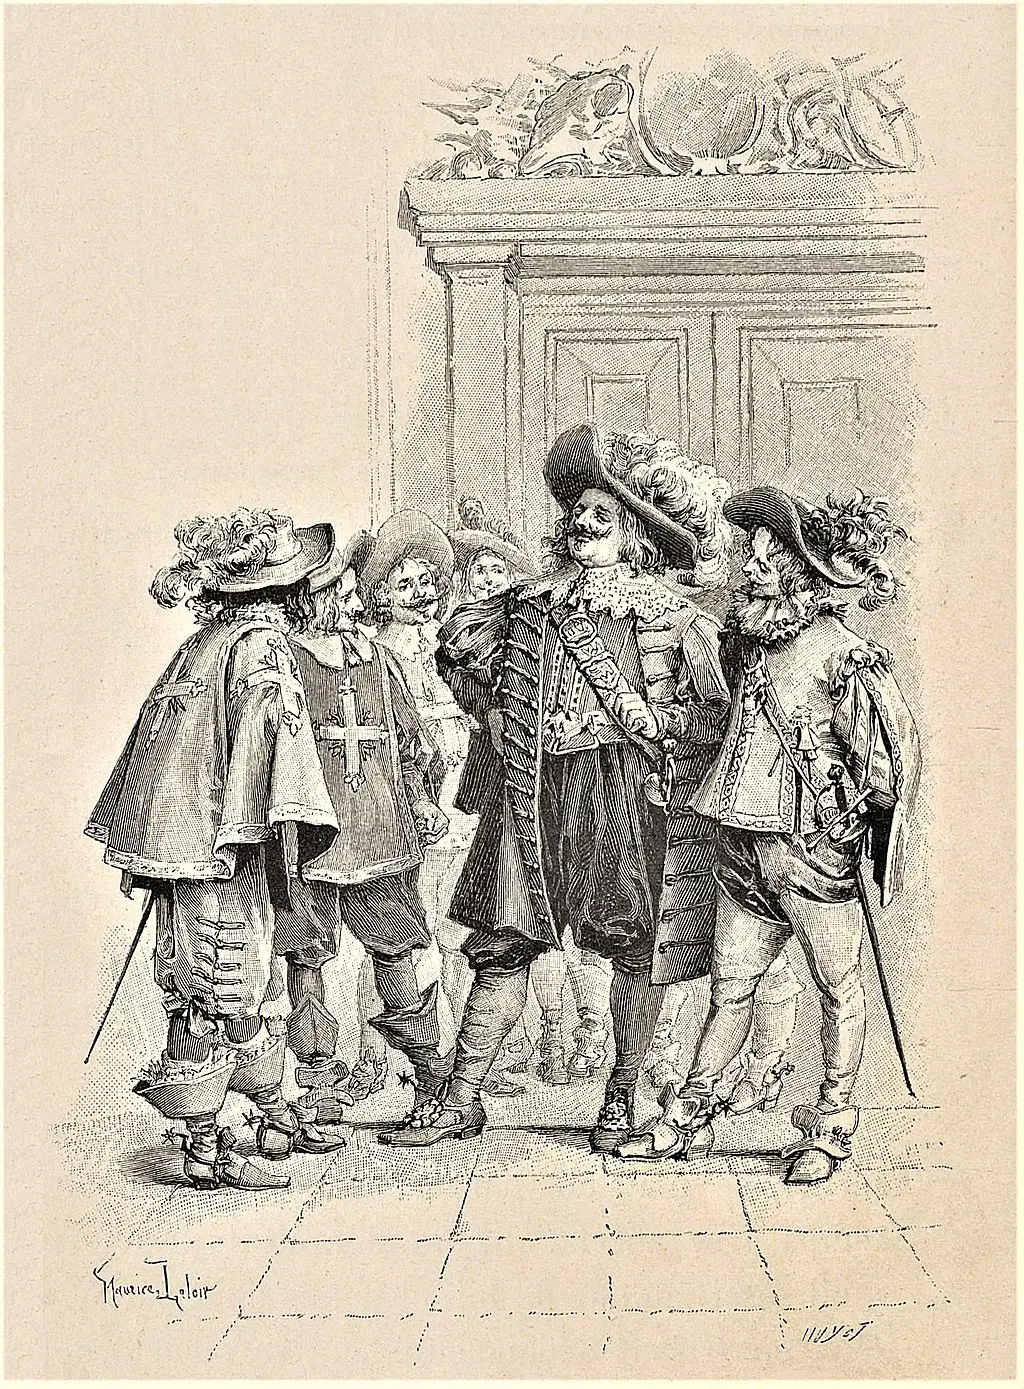 La verdadera historia de D'Artagnan y los tres mosqueteros